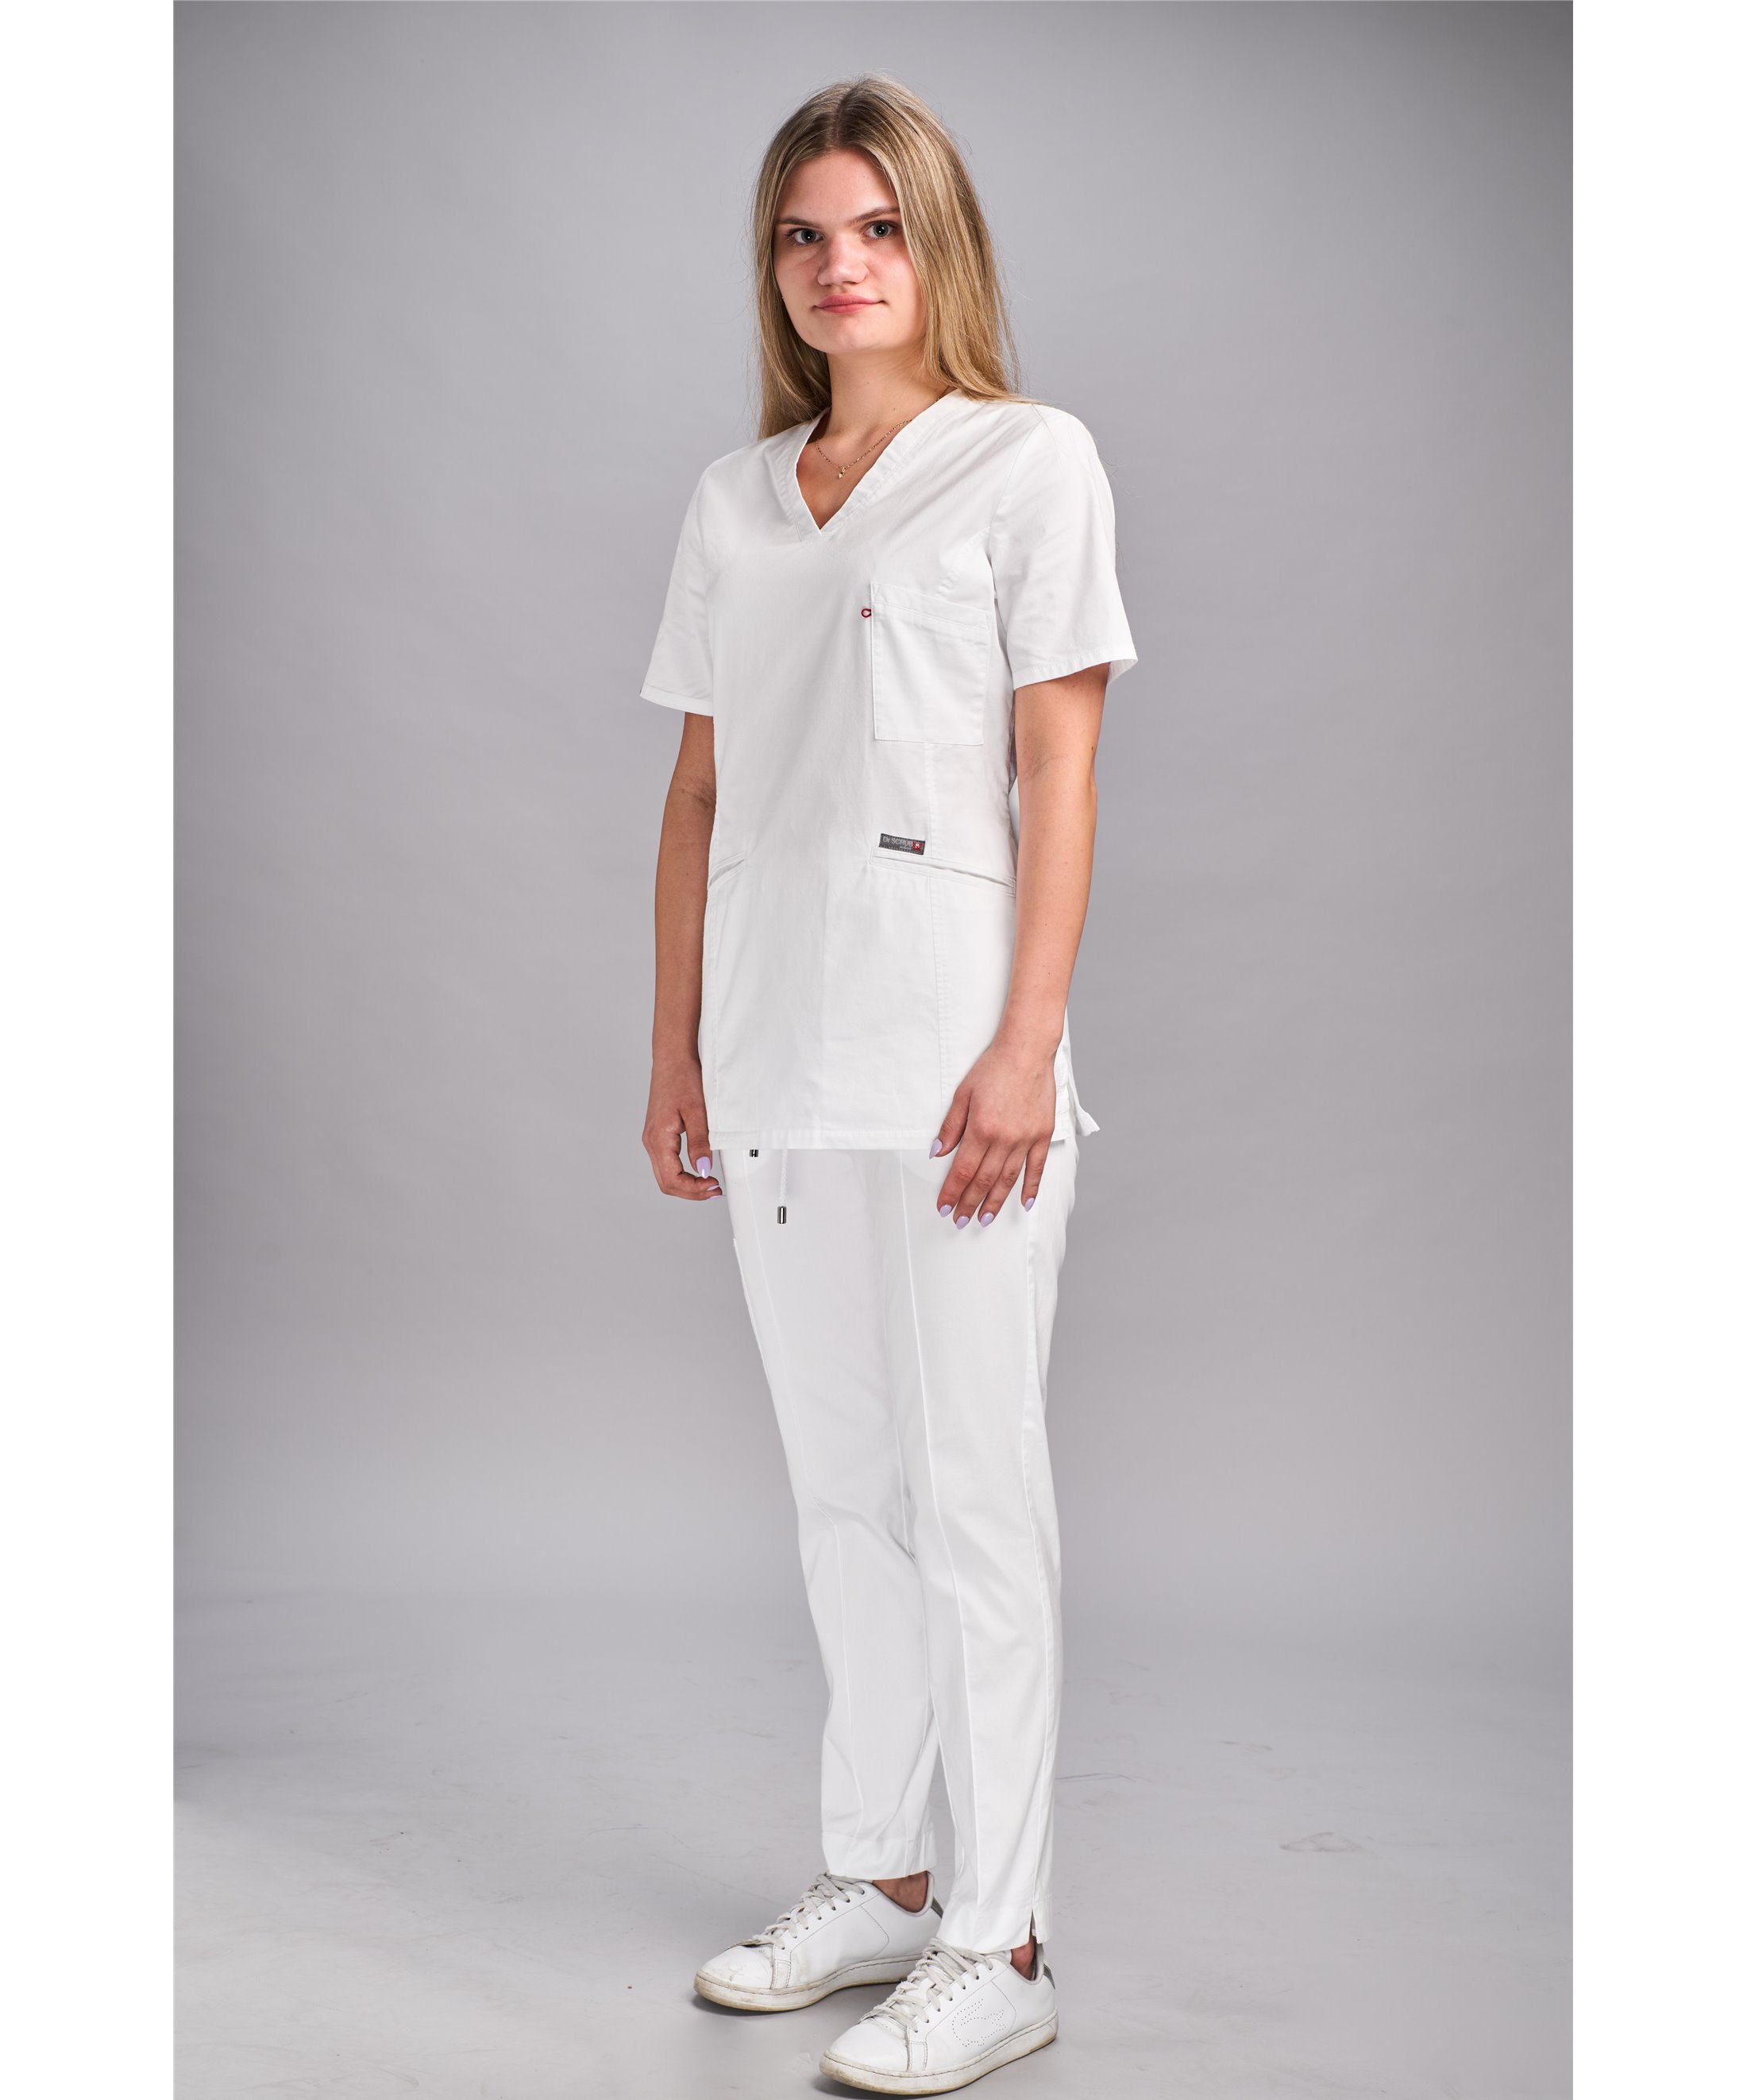 Komplet medyczny cotton (Bluza MARY COTTON jednokolorowa + Spodnie CLASSIC COTTON)